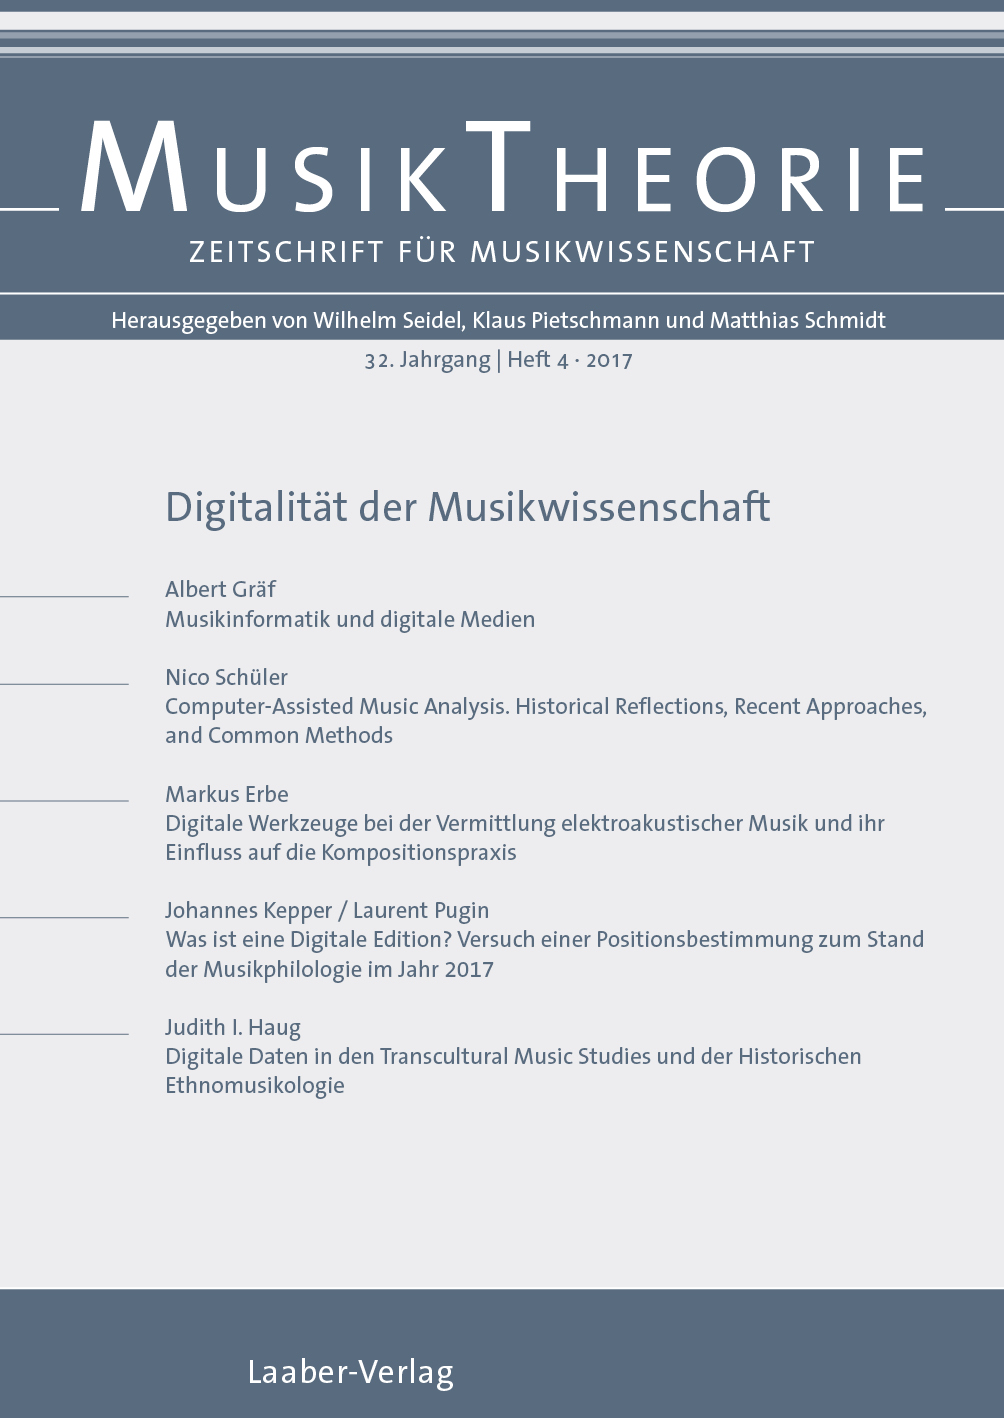 Musiktheorie Heft 4/2017